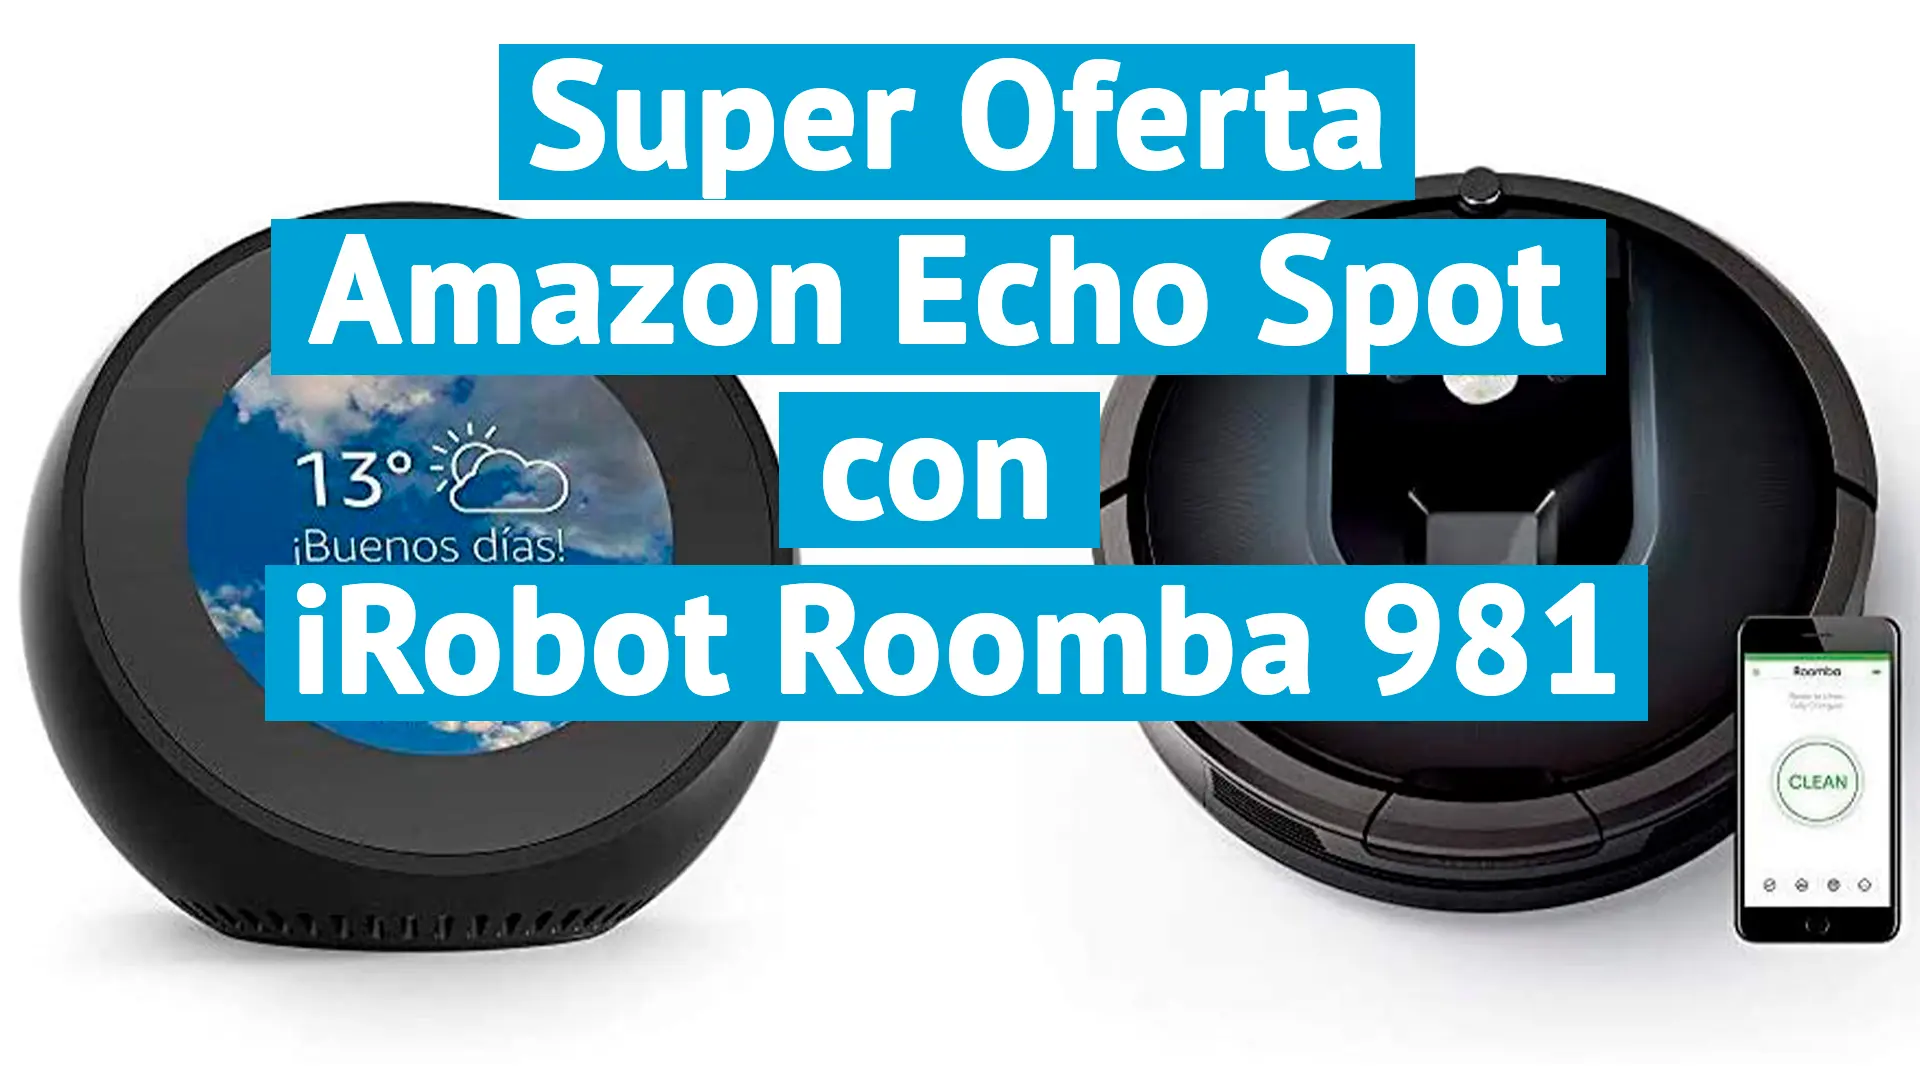 Amazon Echo Spot con iRobot Roomba 981 como superoferta de su adquisición